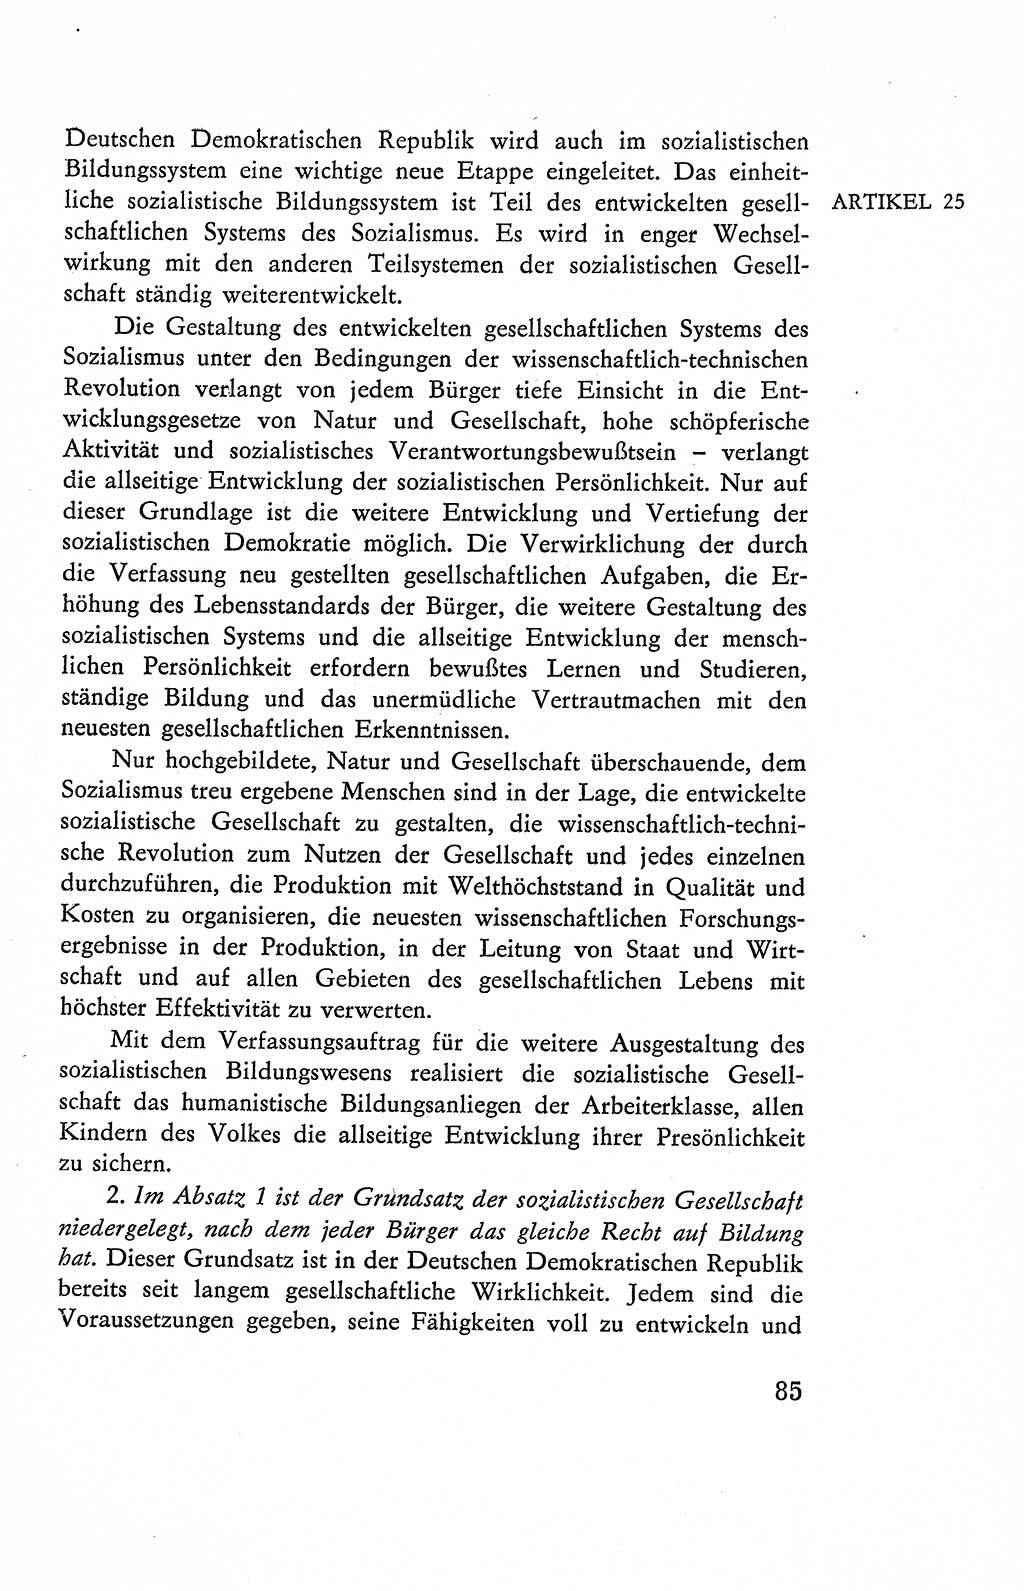 Verfassung der Deutschen Demokratischen Republik (DDR), Dokumente, Kommentar 1969, Band 2, Seite 85 (Verf. DDR Dok. Komm. 1969, Bd. 2, S. 85)